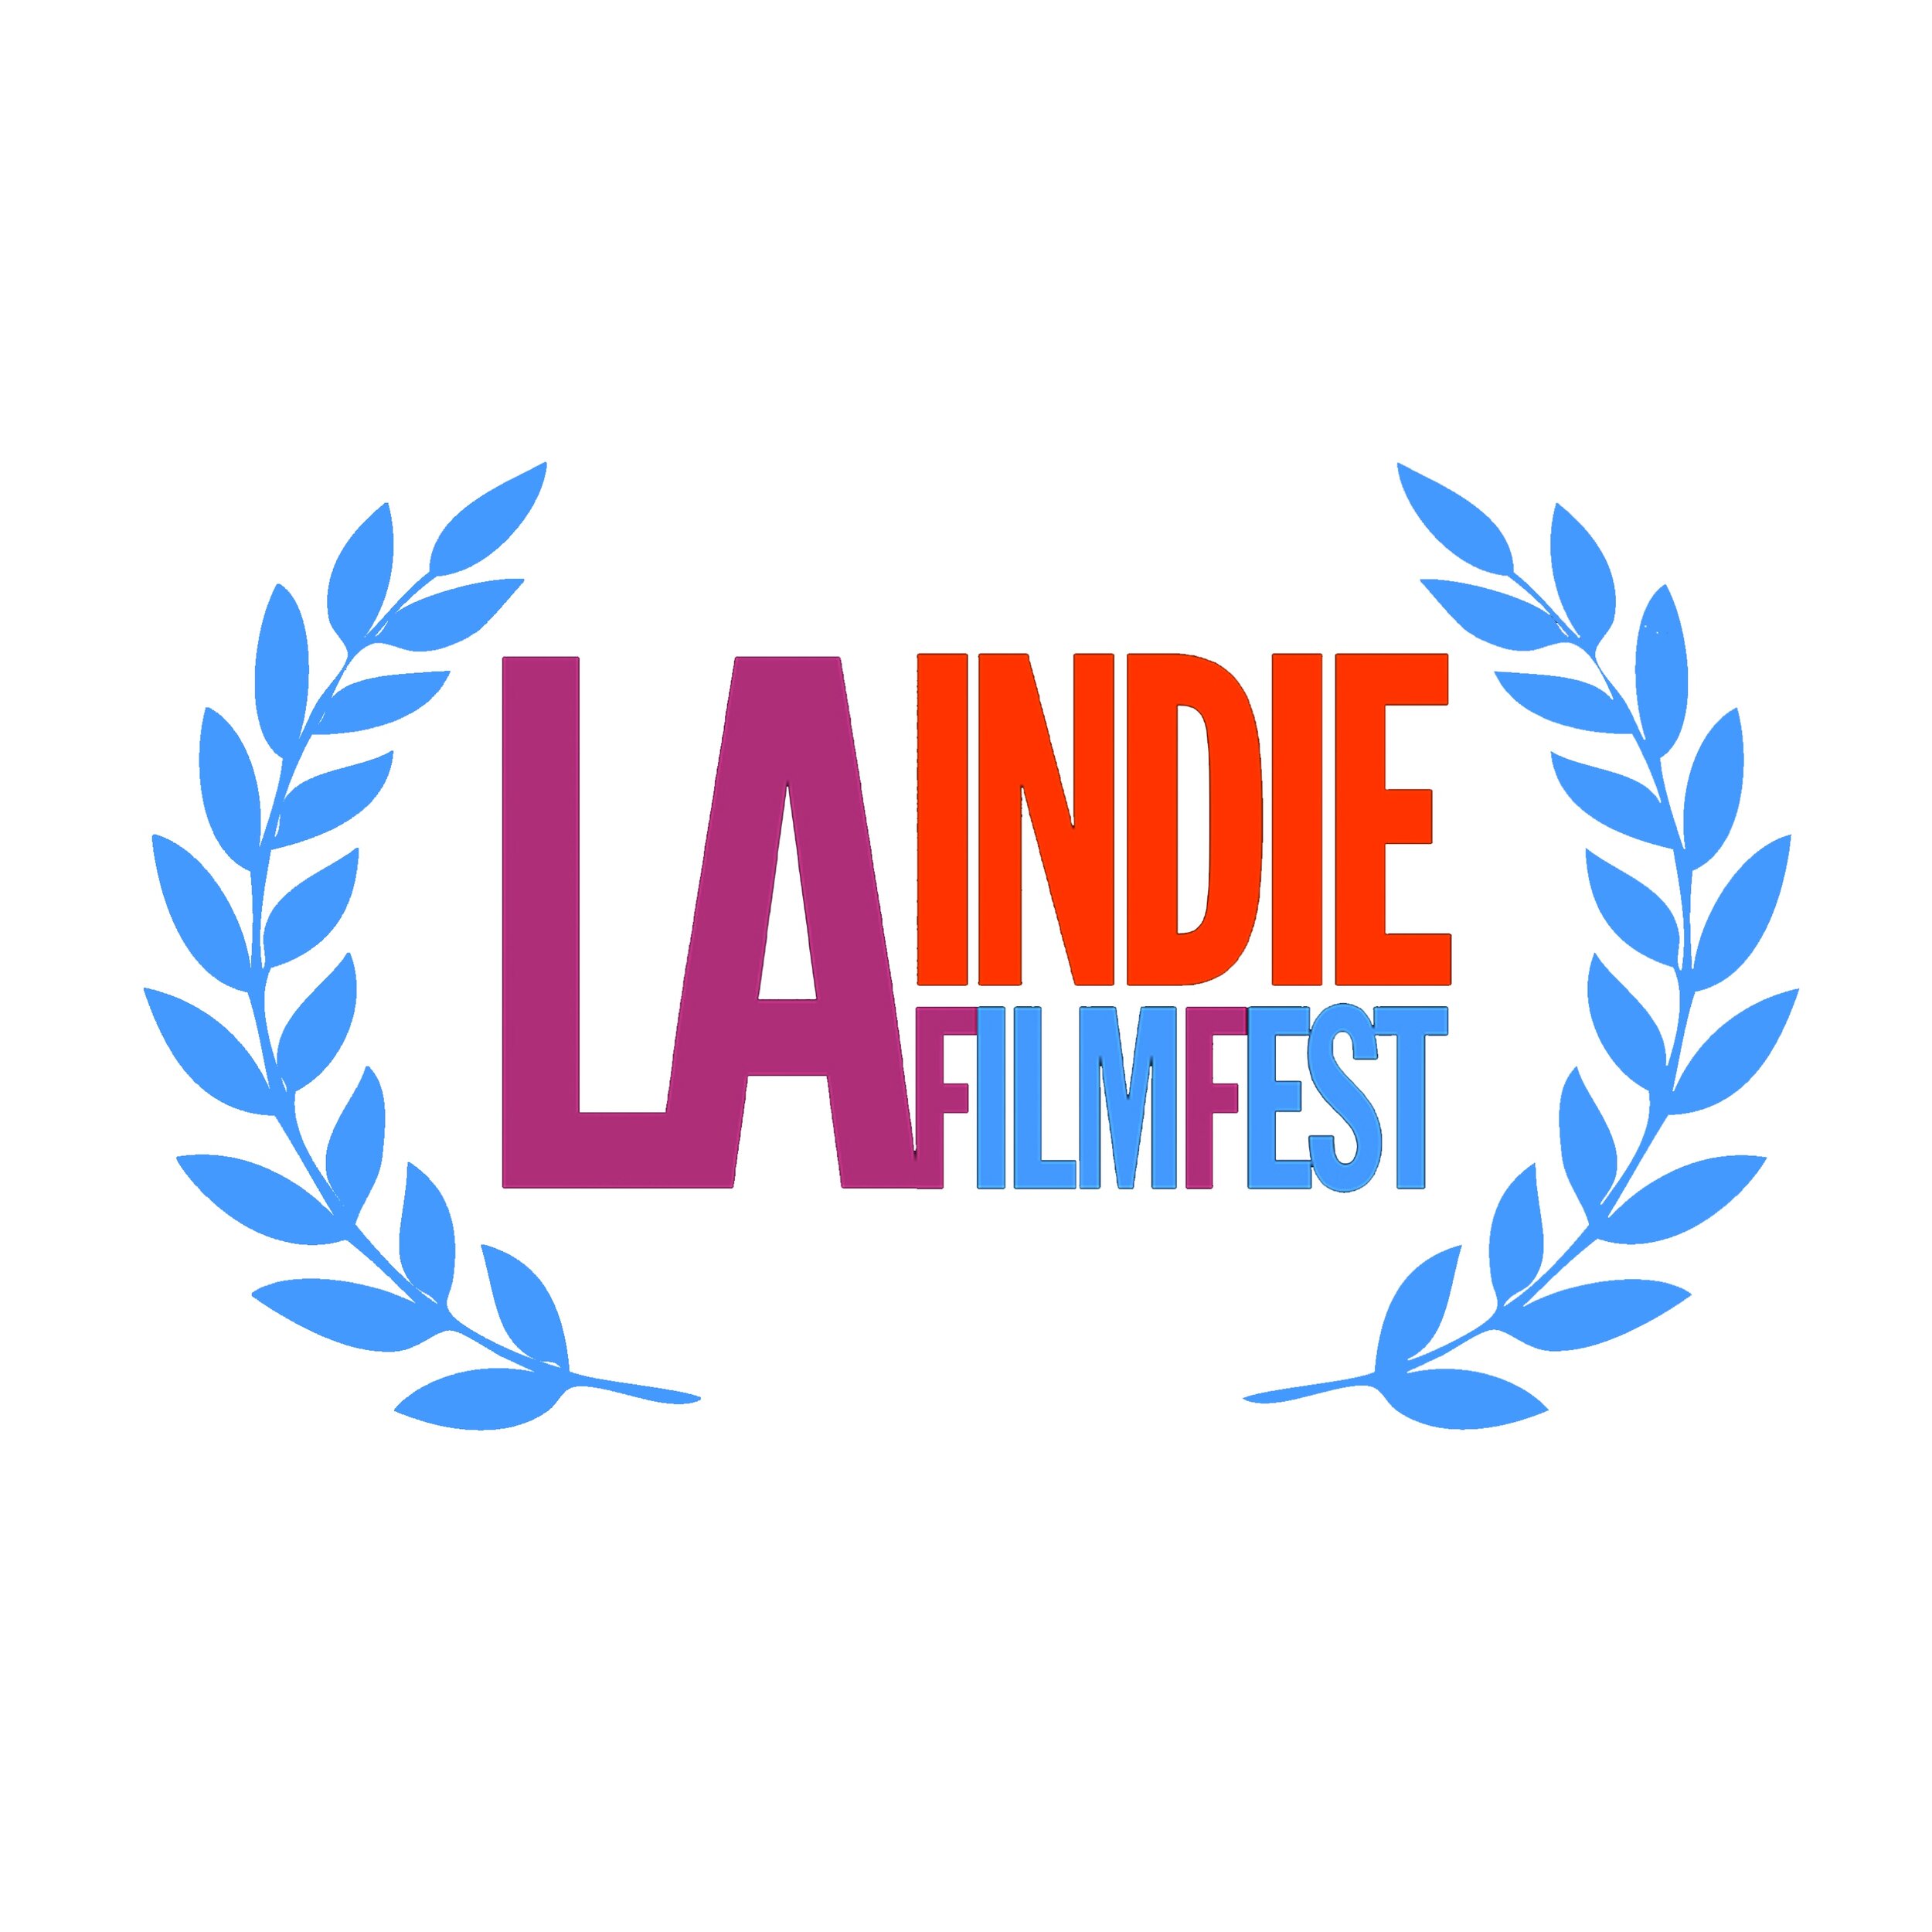 LA-Indie-FilmFest-Laurel-BlueTransparent-OfficialSelection_Square.jpg